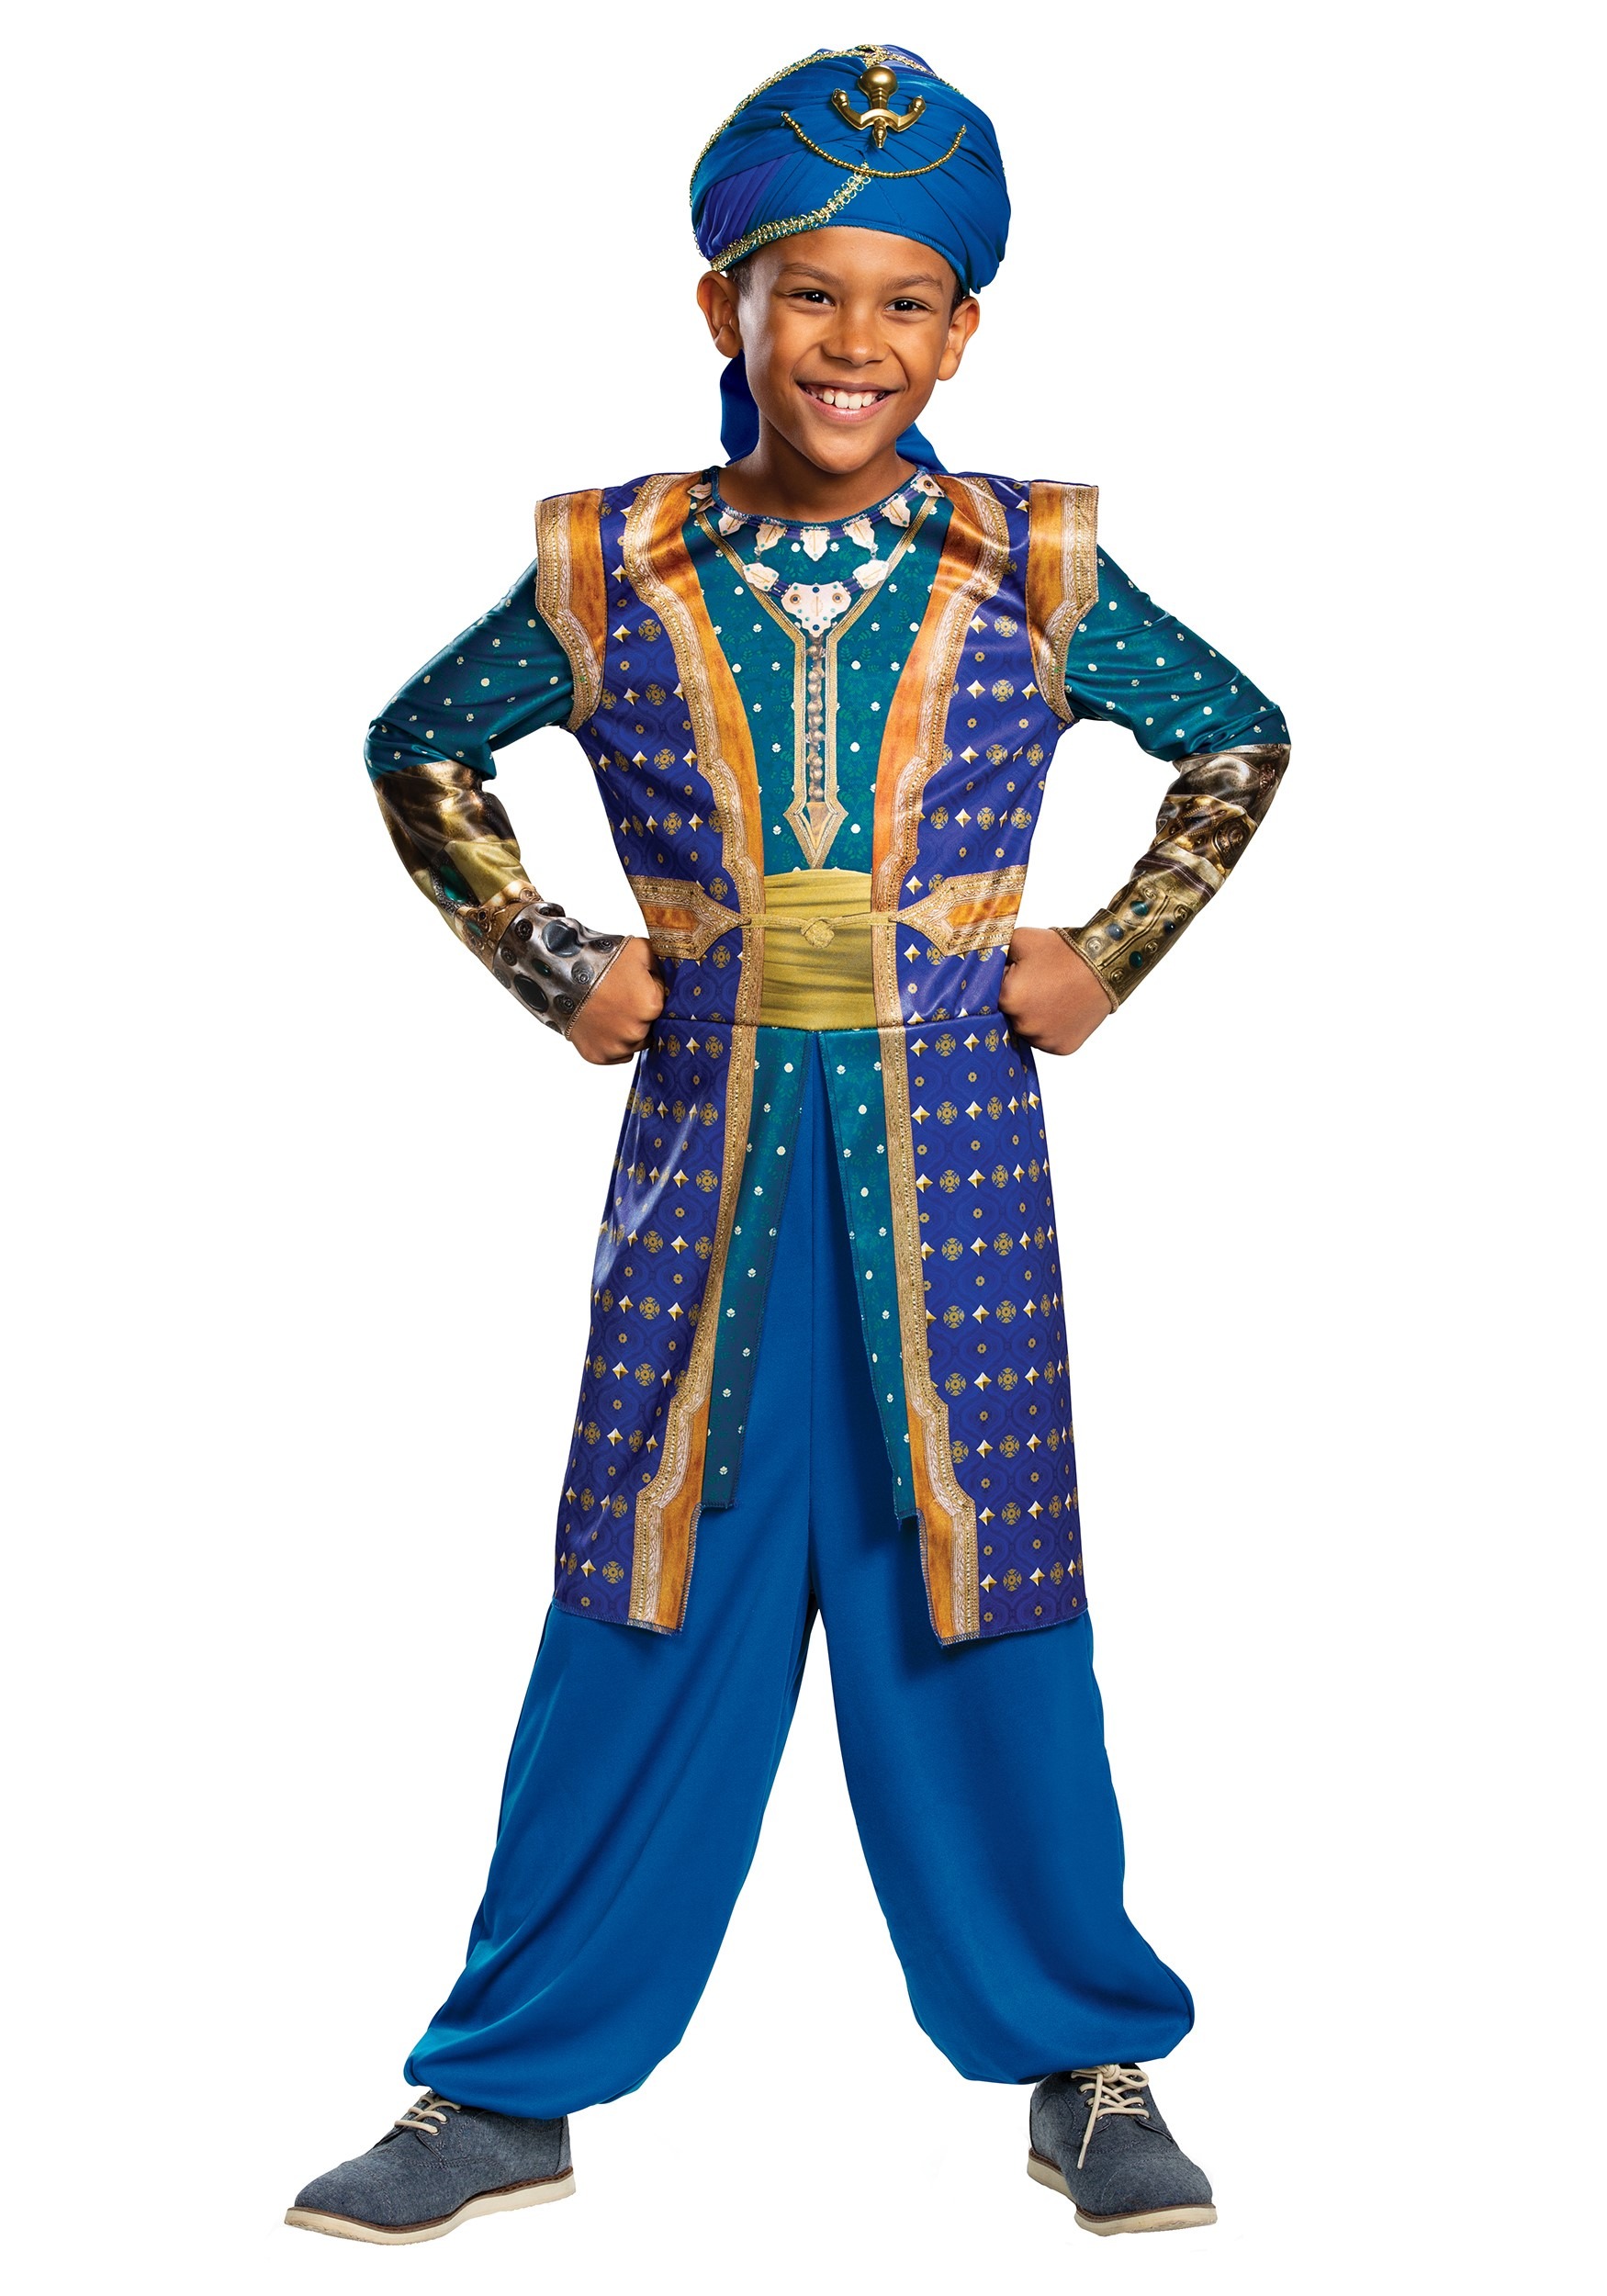 The Disney Aladdin Genie Headband & Cuffs Kit